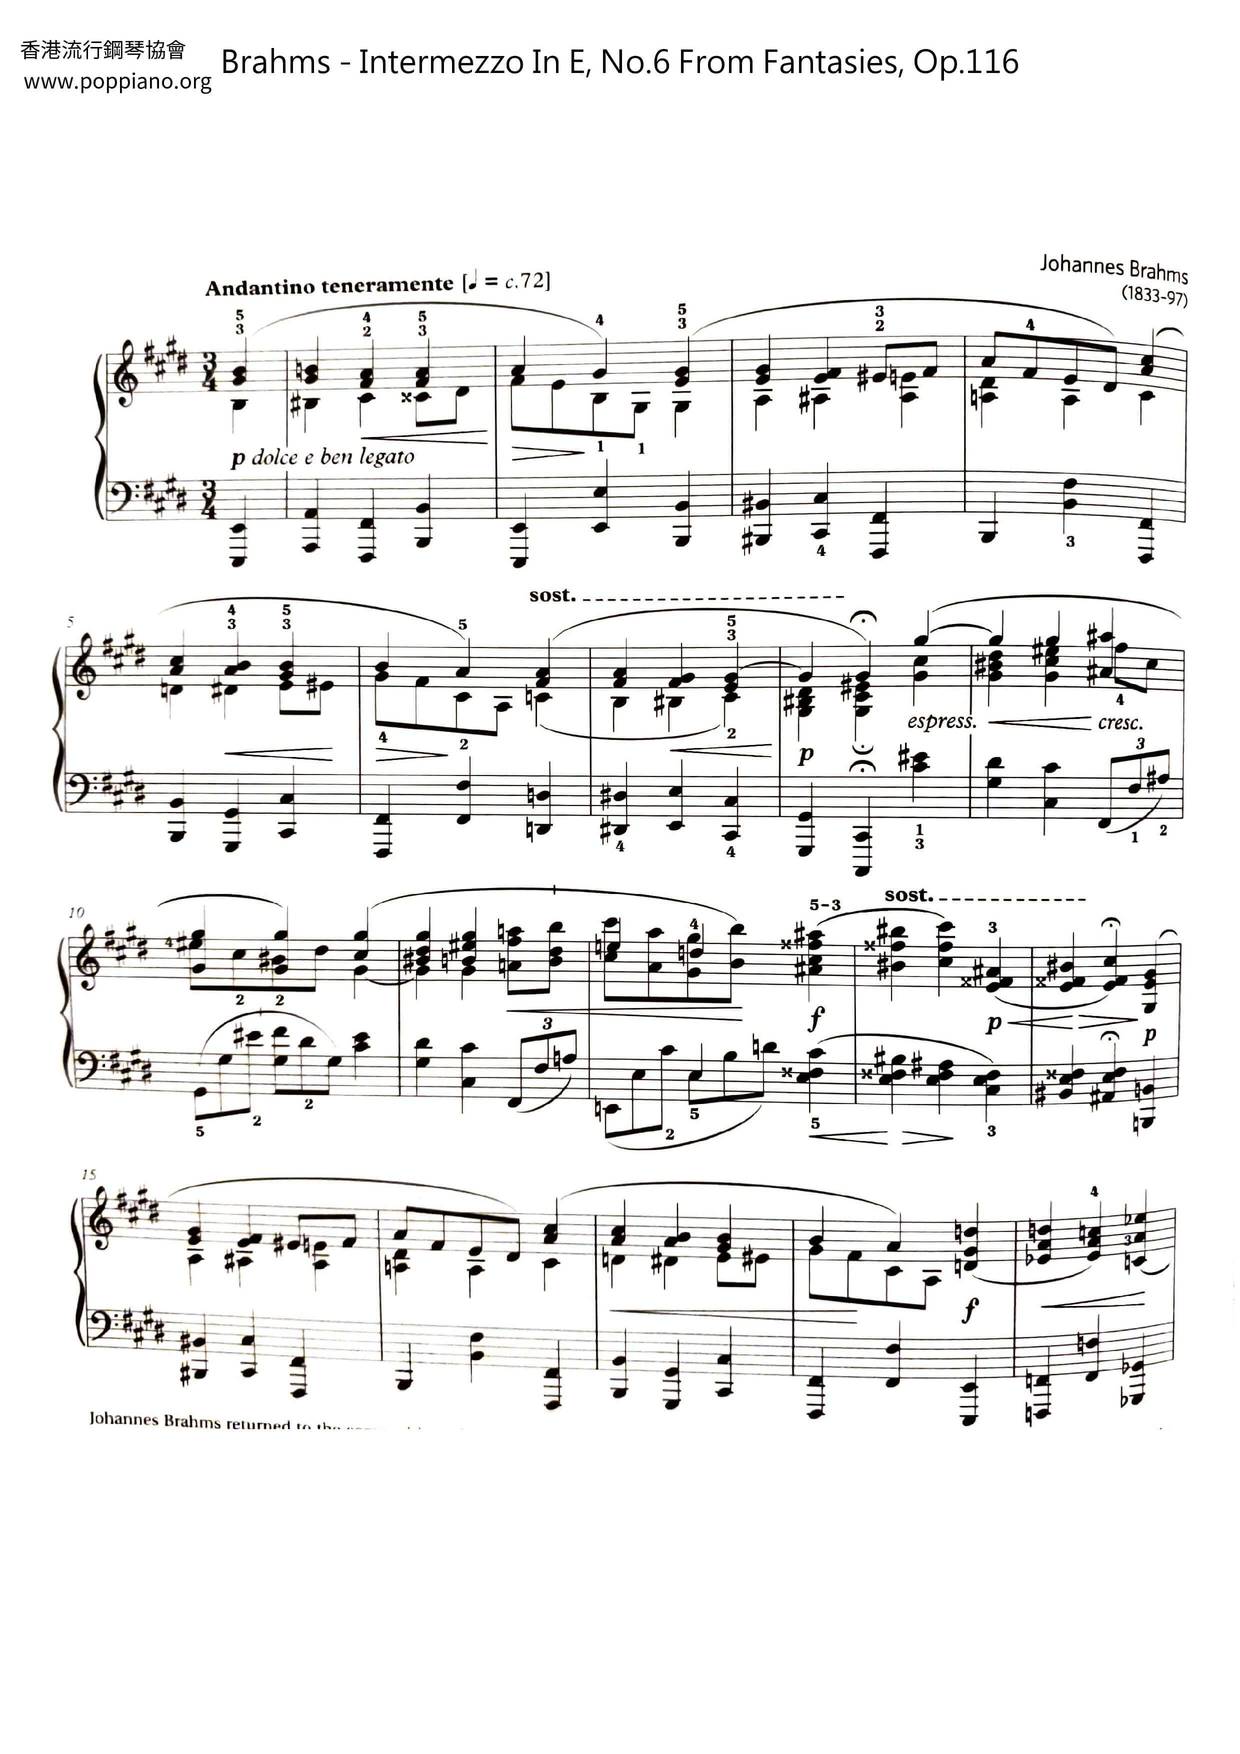 Intermezzo In E, No.6 From Fantasies, Op.116 Score